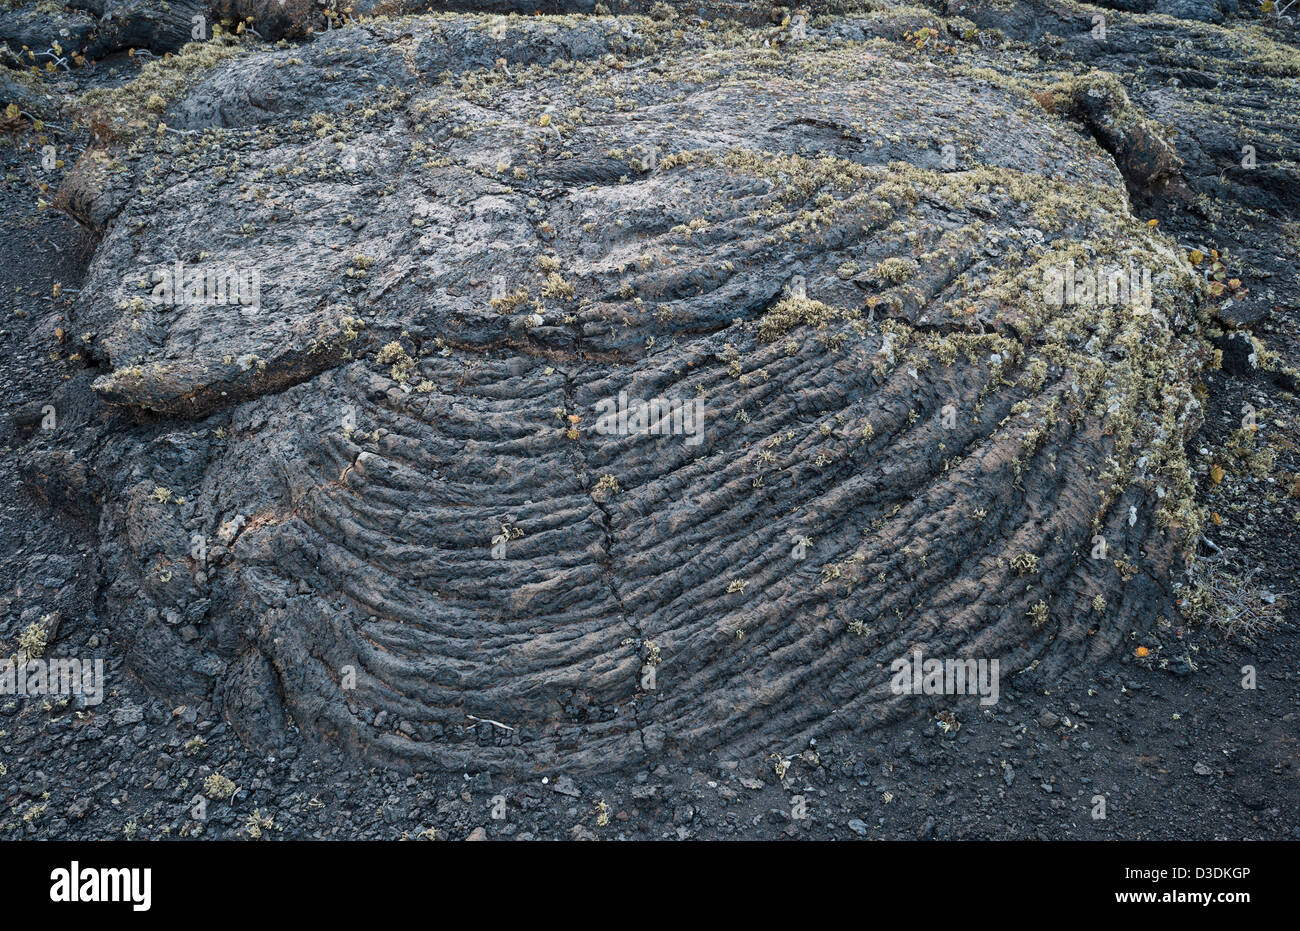 Dettaglio di pahoehoe vescicolare o lava basaltica a base di llichen, vicino a Masdache, Lanzarote, Isole Canarie, Spagna Foto Stock